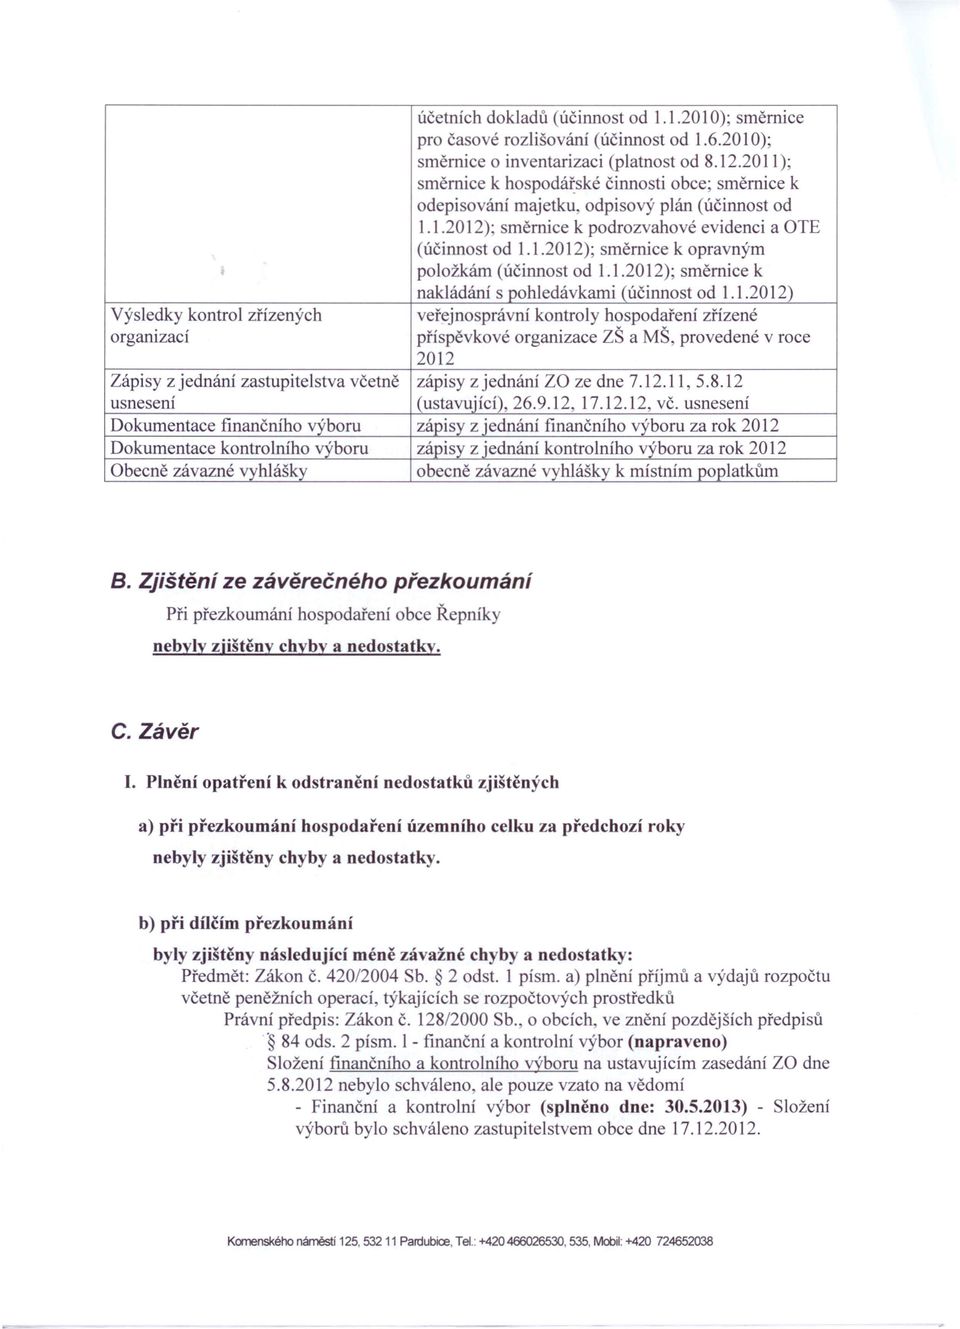 1.2012)' směrnice k nakládání s pohledávkami (účinnost od 1.1.2012) Výsledky kontrol zřízených veřejno právní kontroly hospodaření zřízené organizací příspěvkové organizace ZŠ a MŠ, provedené v roce